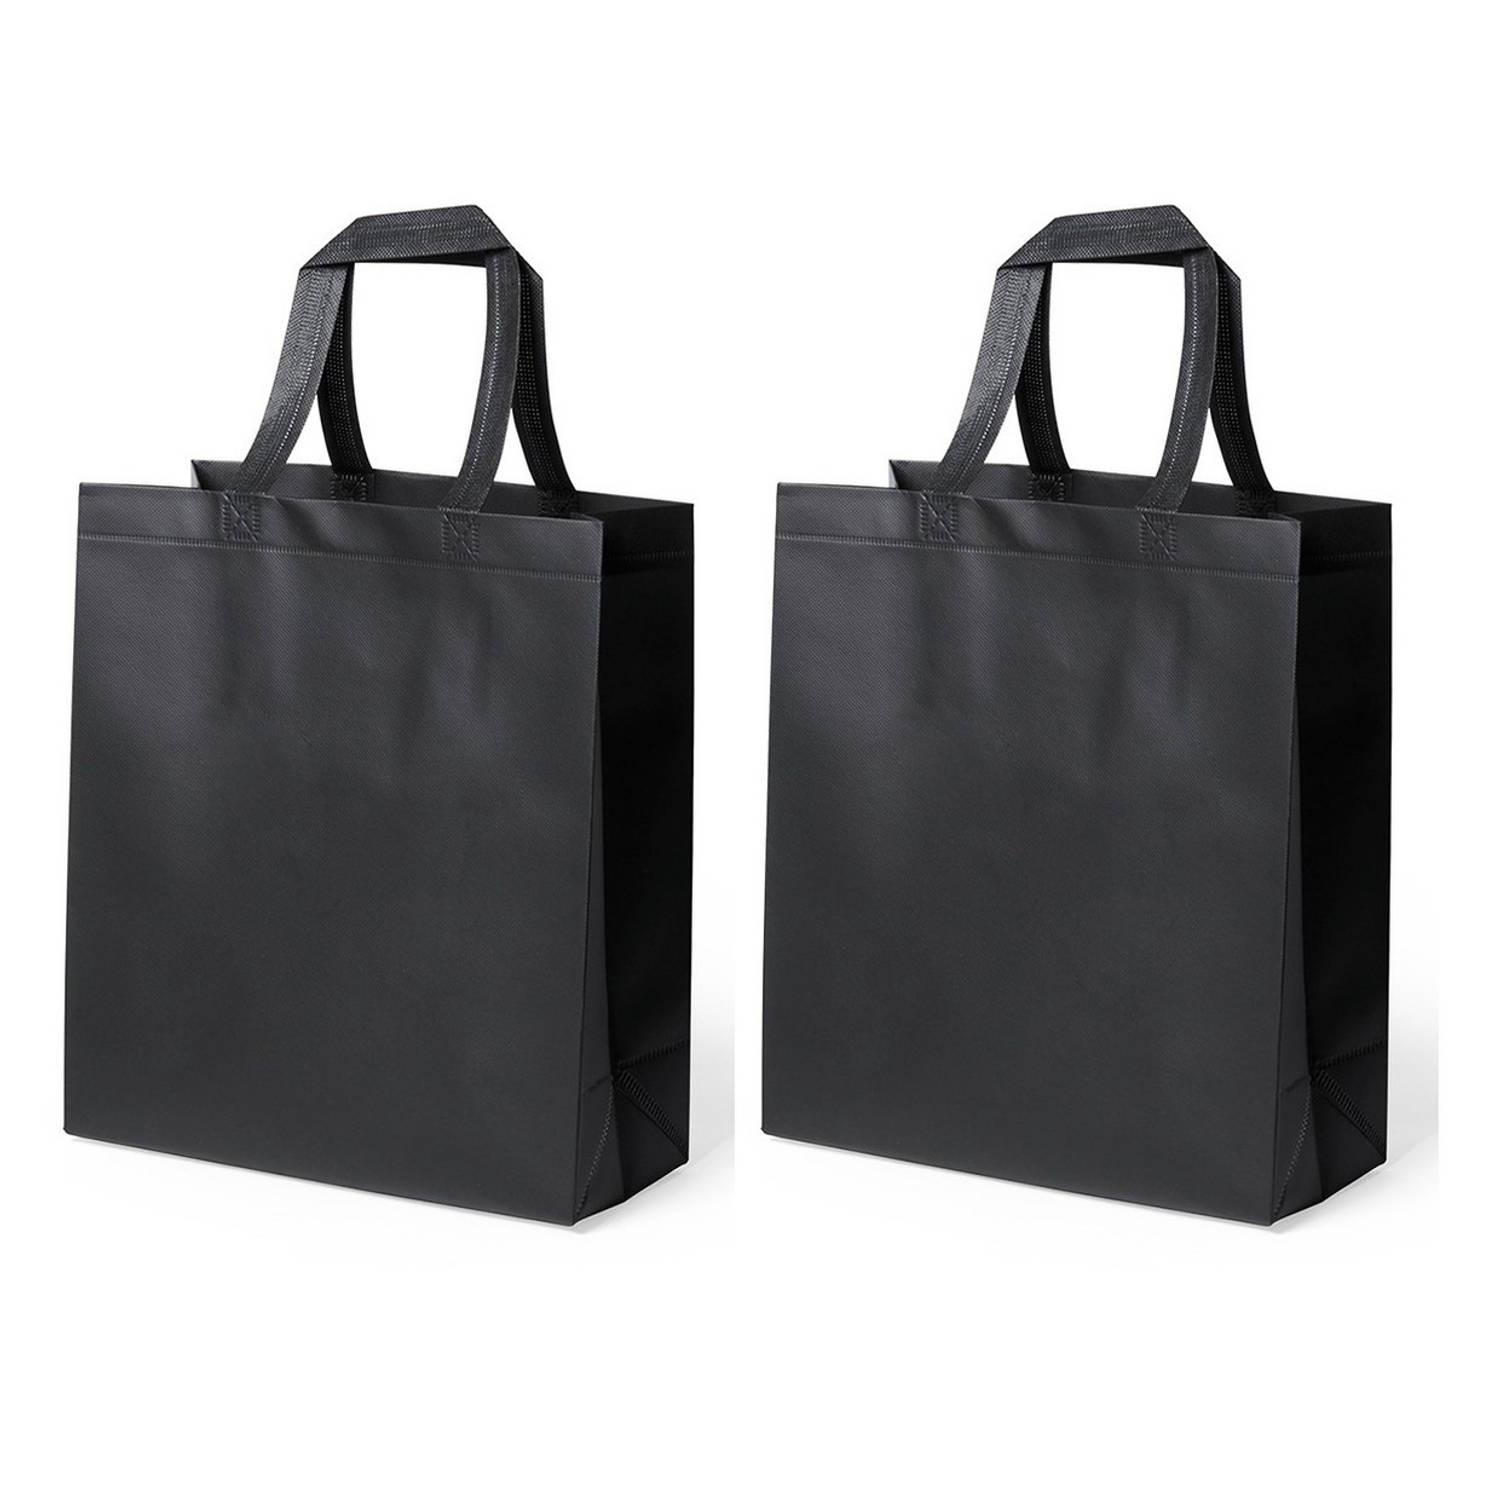 2x Stuks Draagtassen-schoudertassen-boodschappentassen In De Kleur Zwart 35 X 40 X 15 Cm Boodschappe